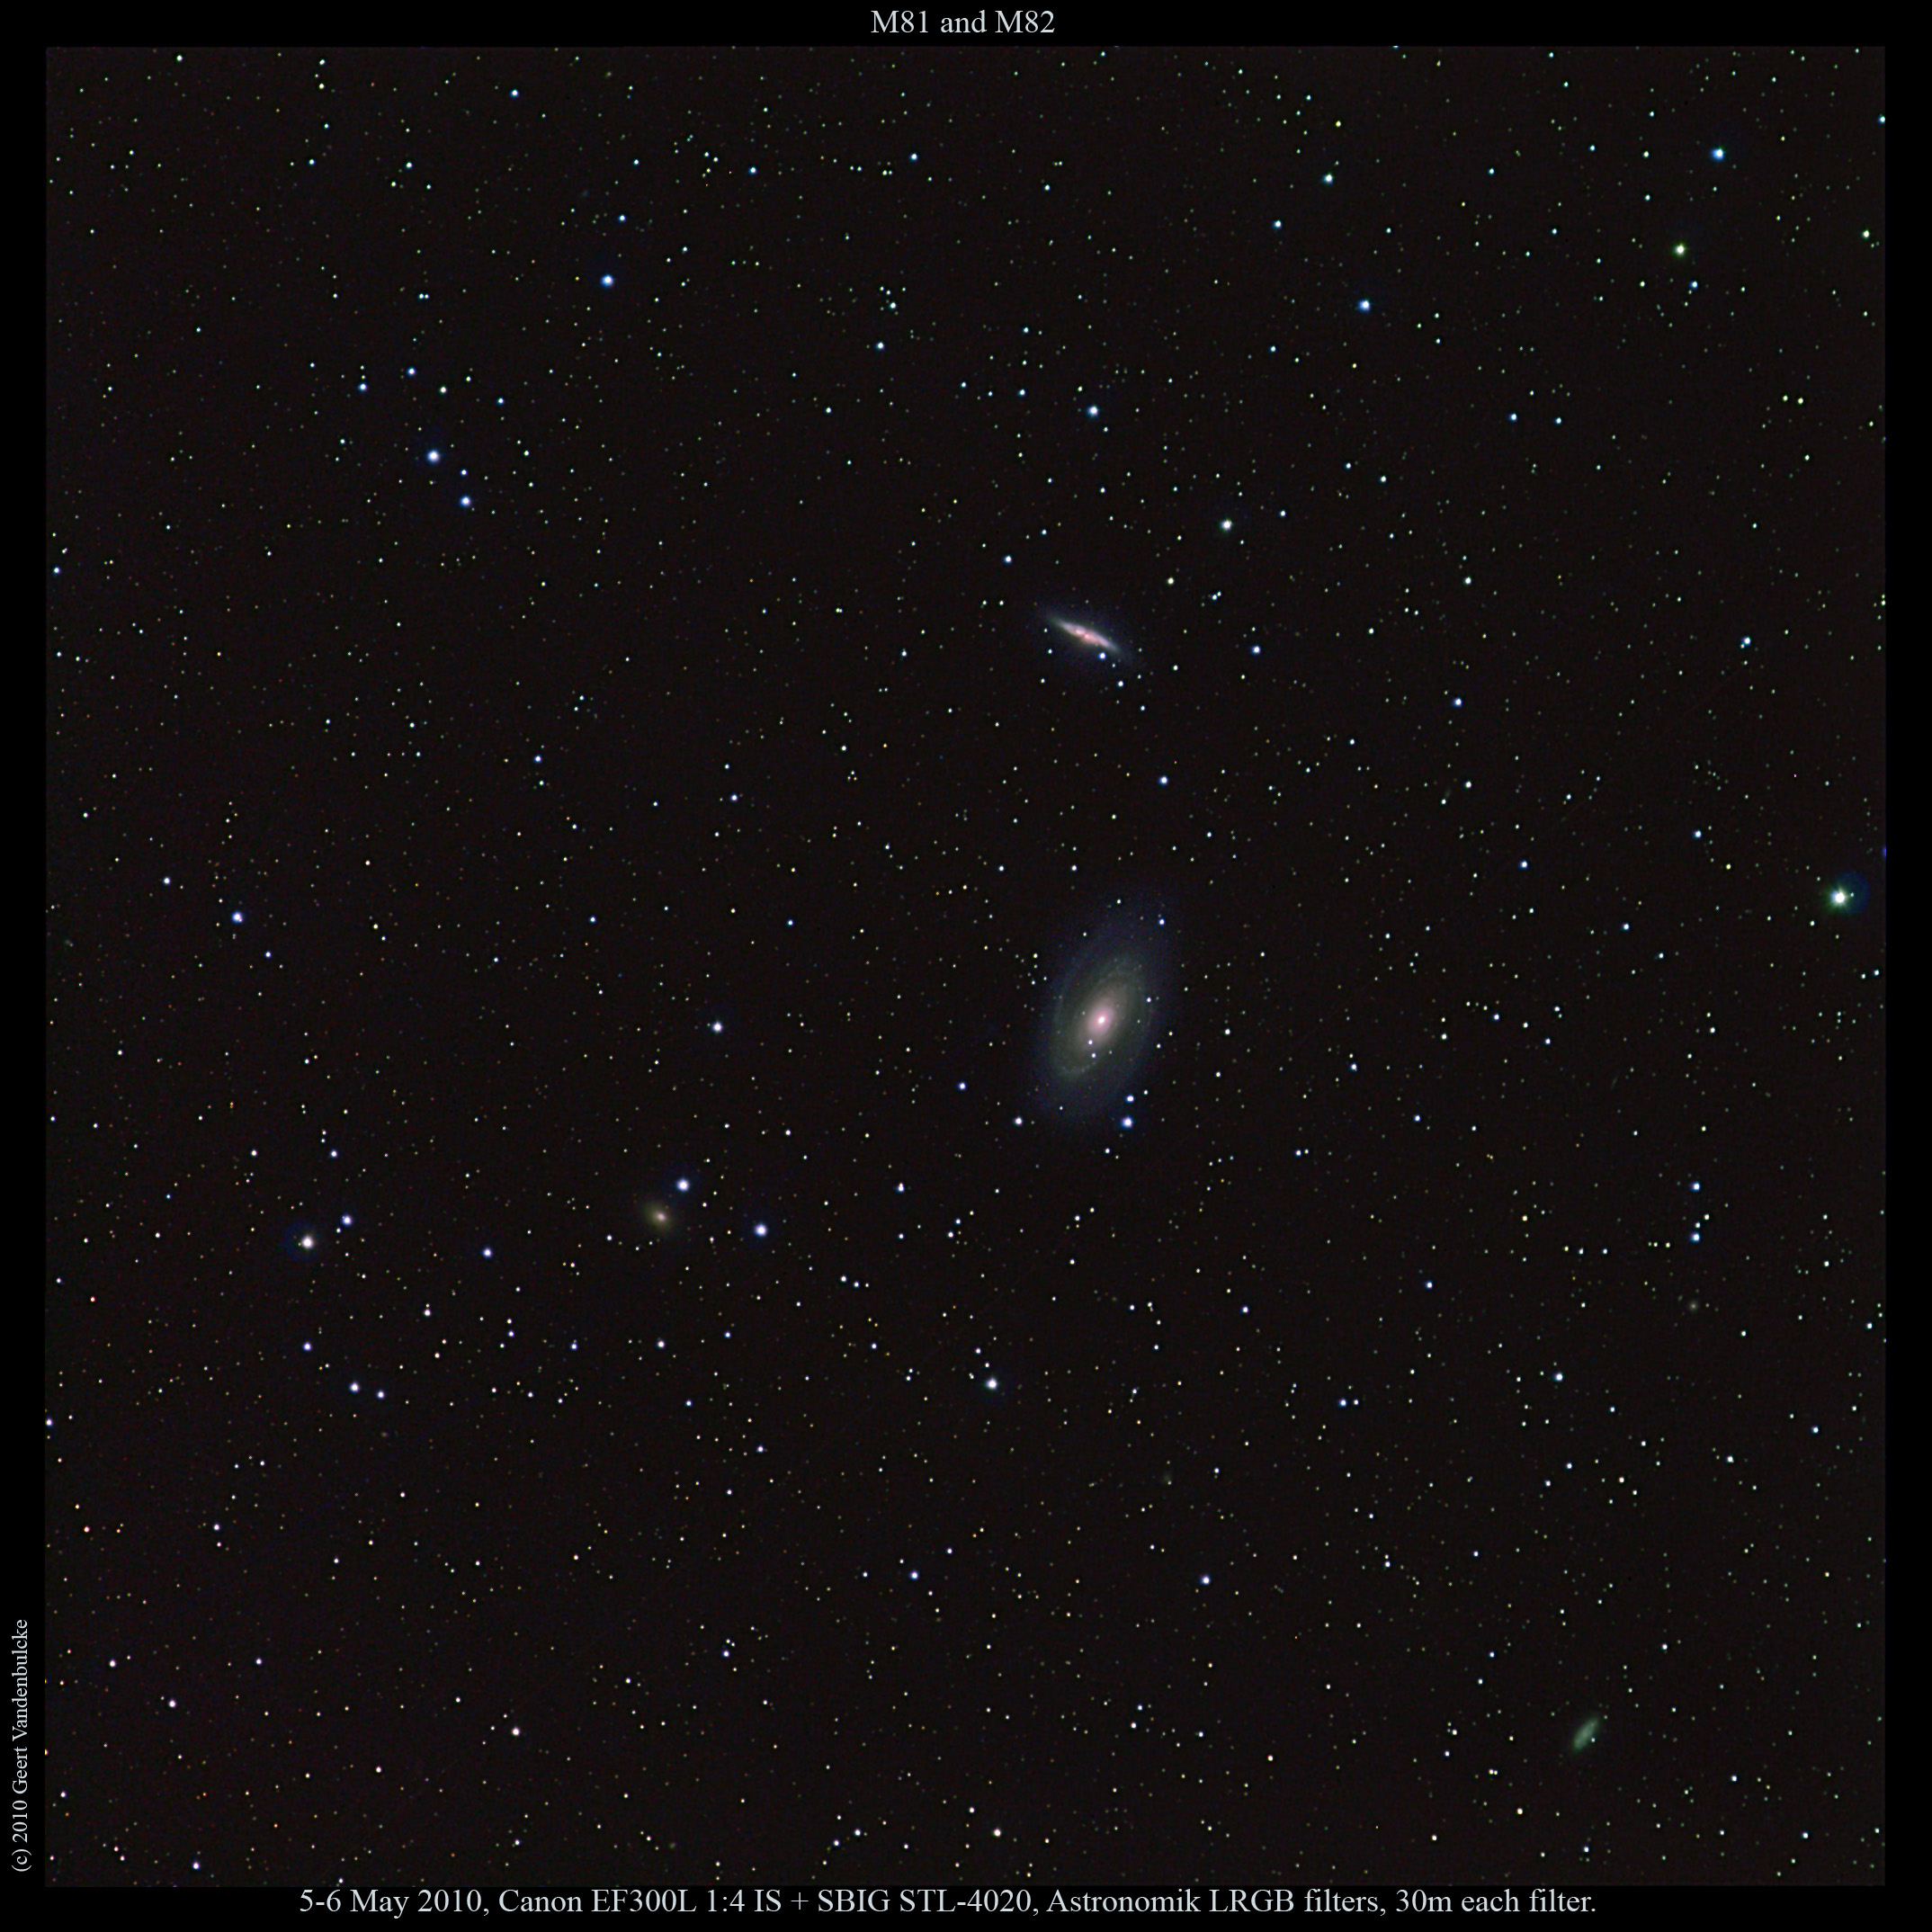 M81-M82 pic